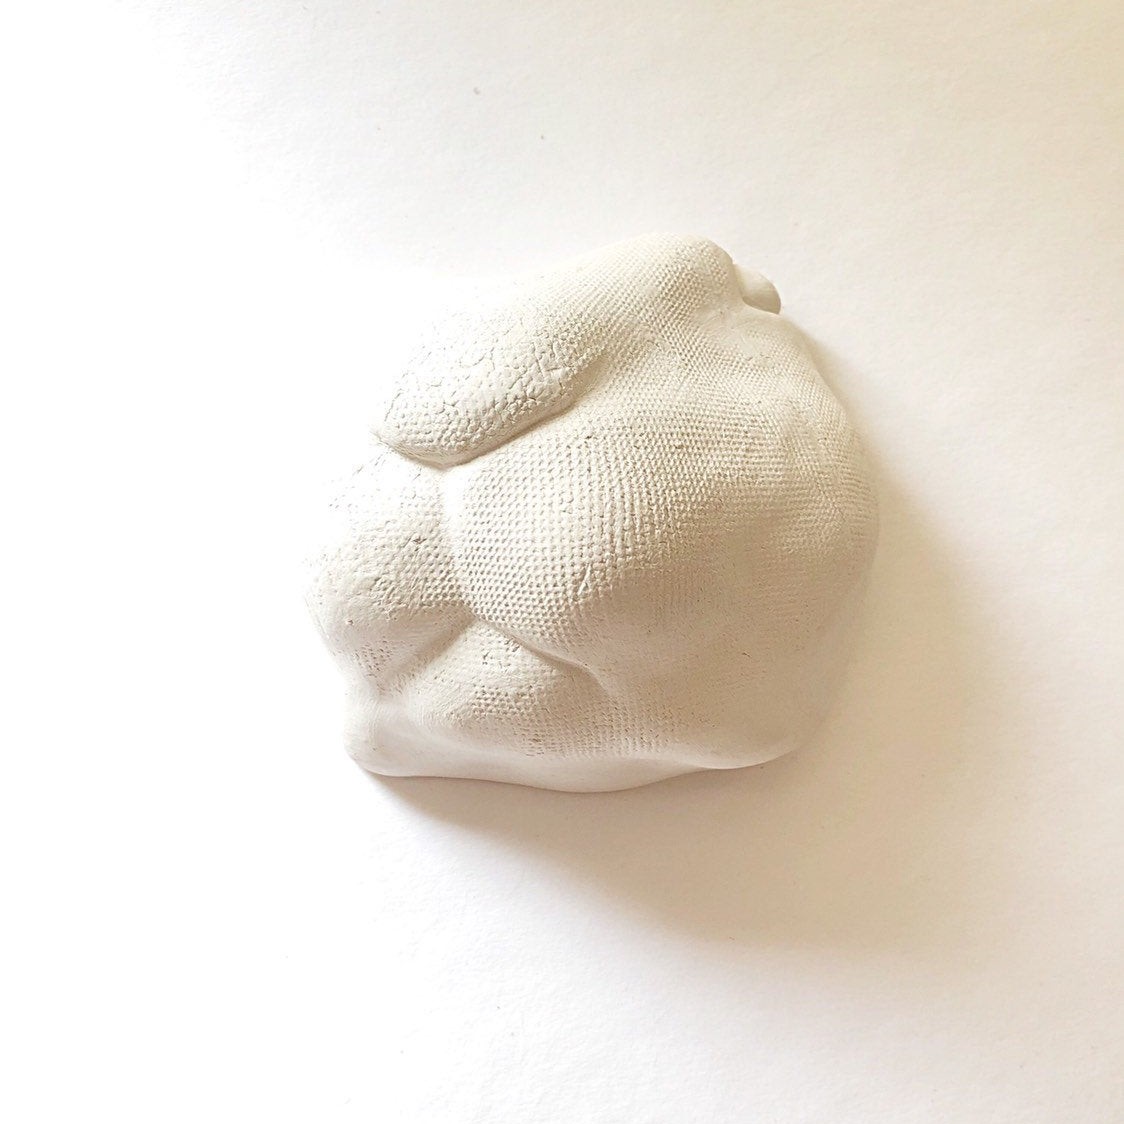 Rabbit Nose - Ceramic White